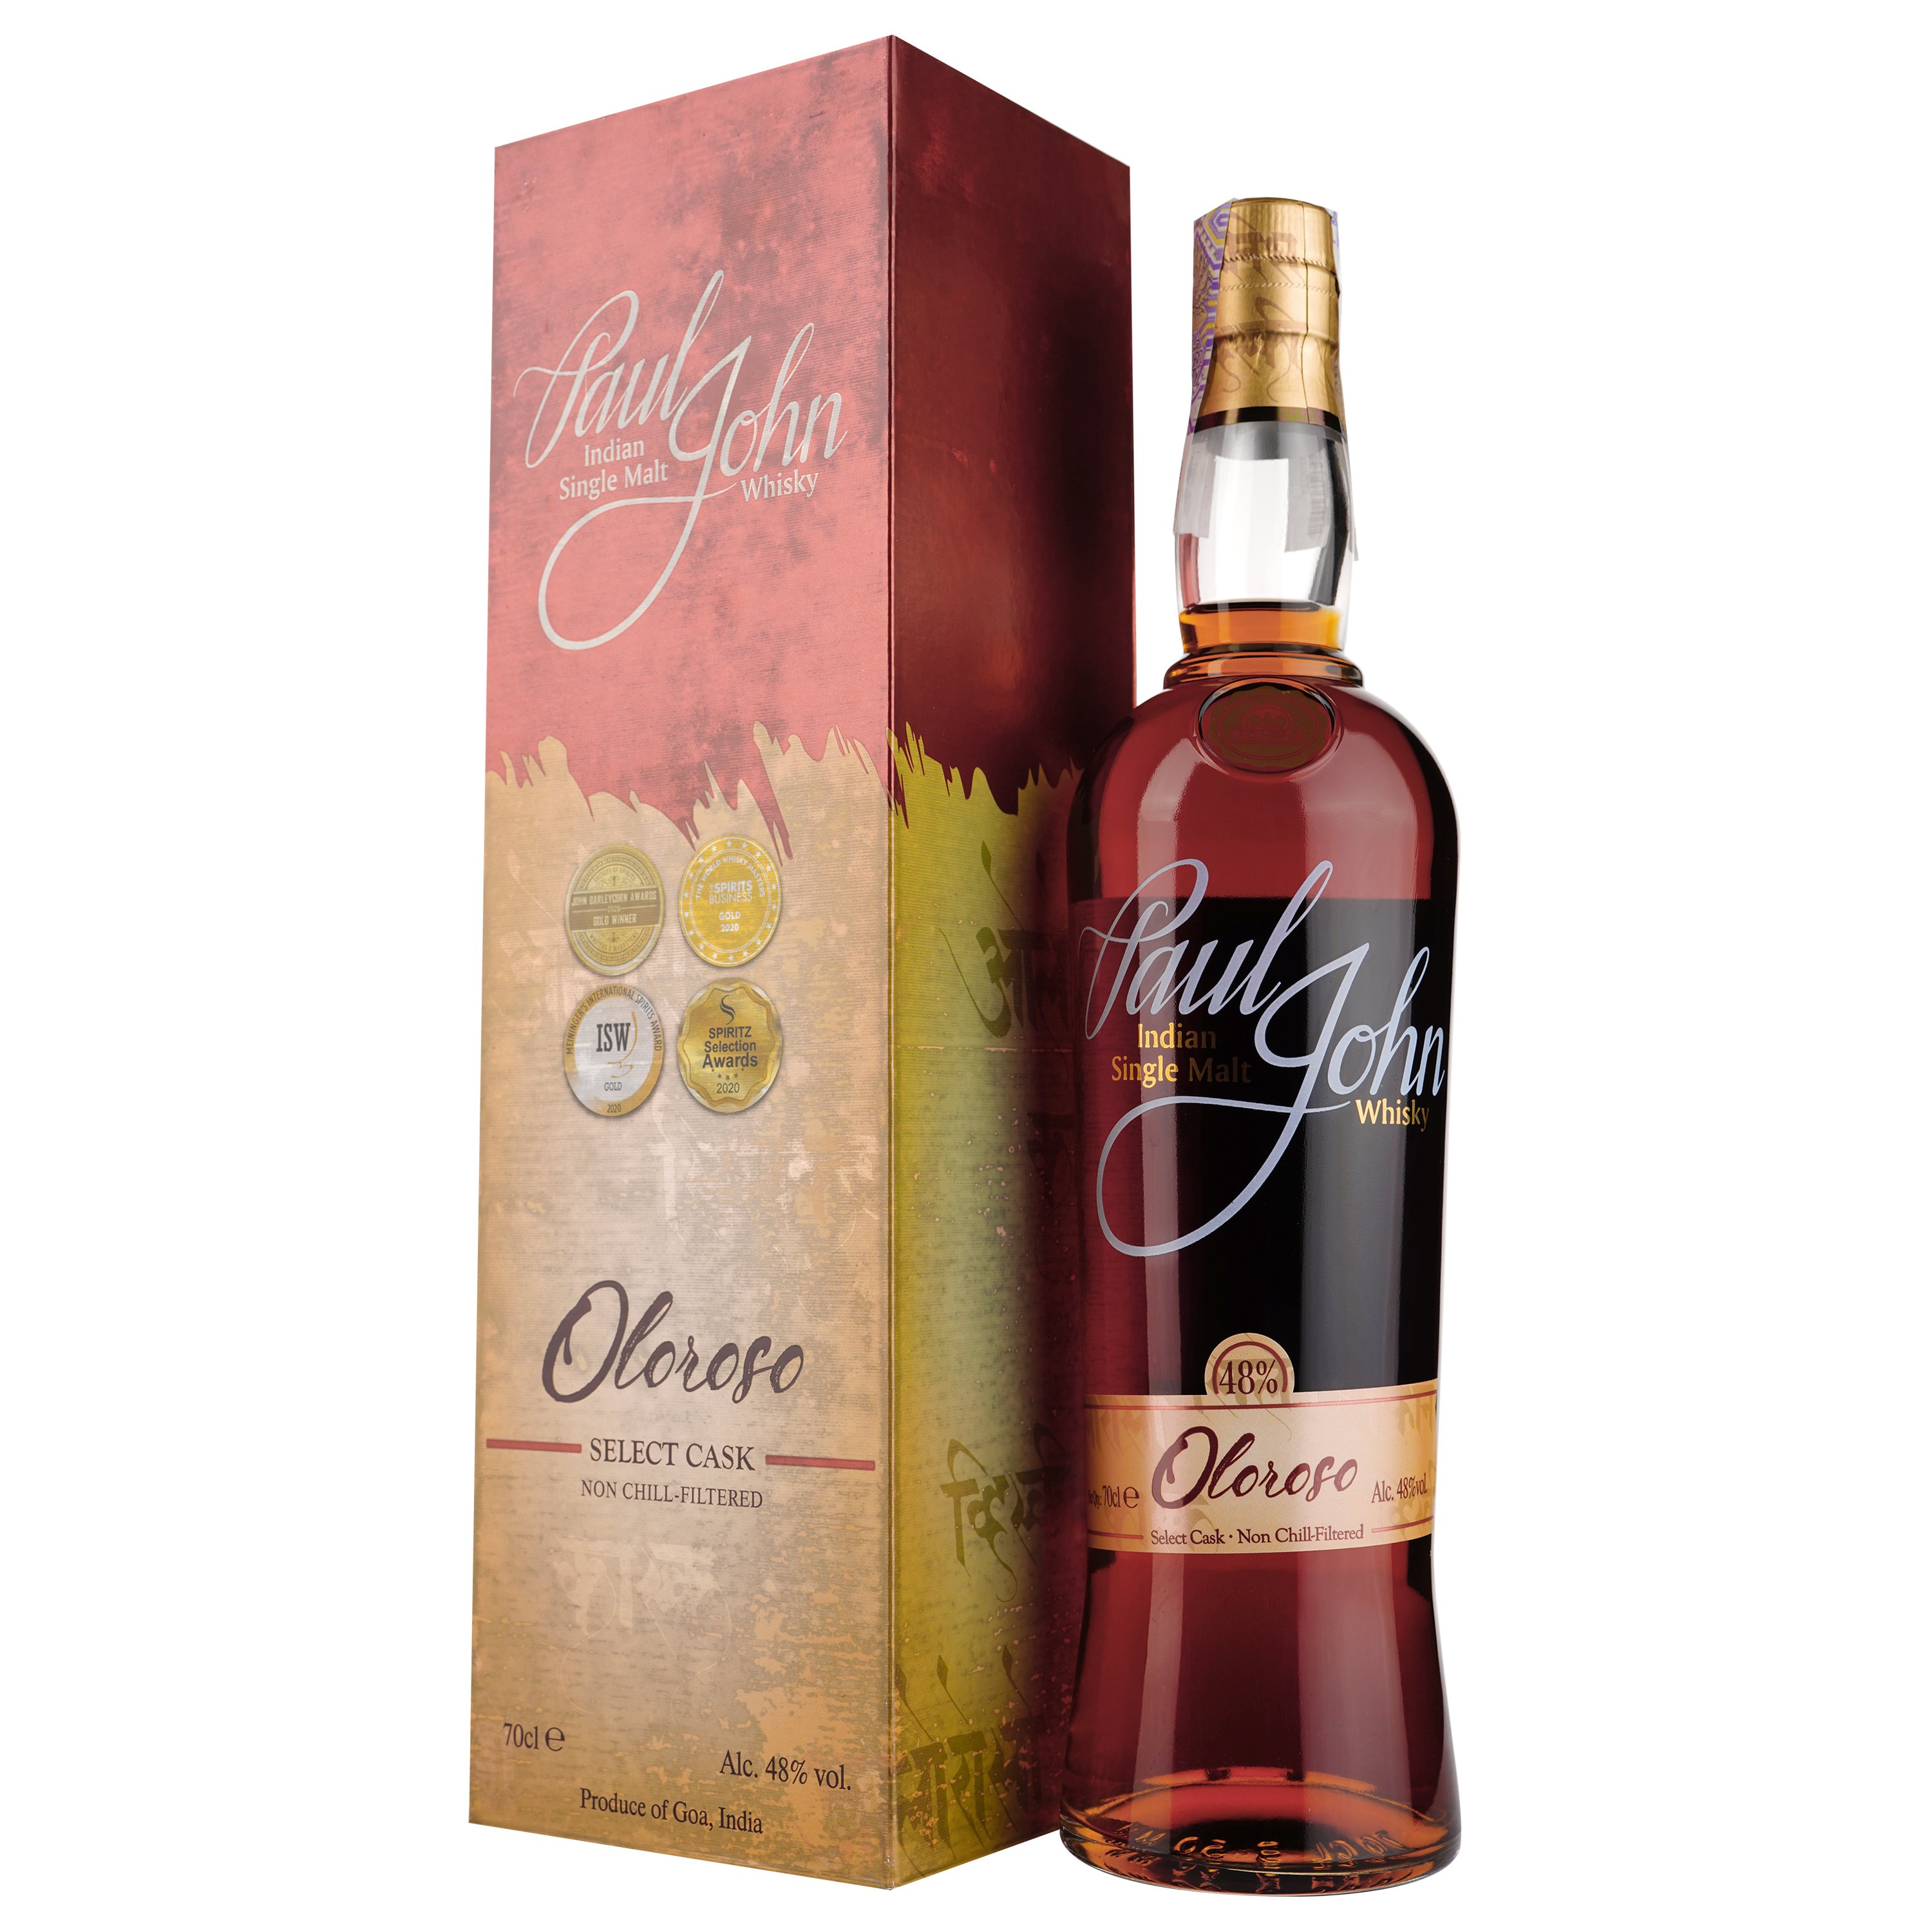 Віскі Paul John Oloroso Single Malt Indian Whisky, в коробці, 48%, 0,7 л - фото 1